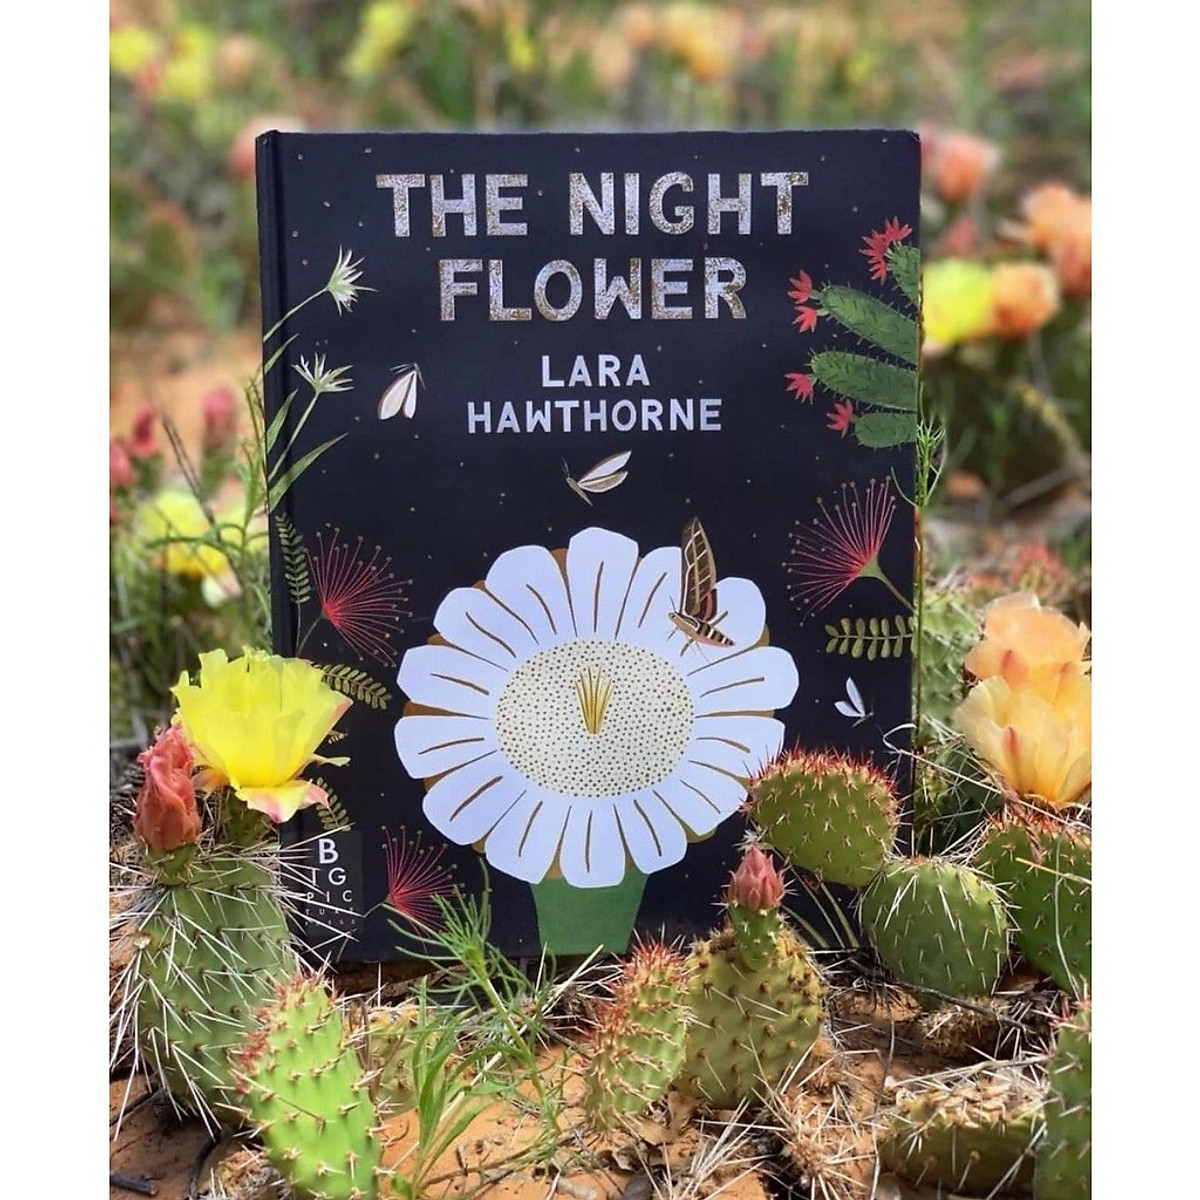 Sách - The Night Flower - Sách Nói Về Loài Hoa Xương Rồng Nở Về Đêm, Cây Xương Rồng Saguaro Trên Sa Mạc Sonoran Ở Arizona - Nhà Sách Giáo Dục Quốc Tế, Bìa Cứng, In Màu